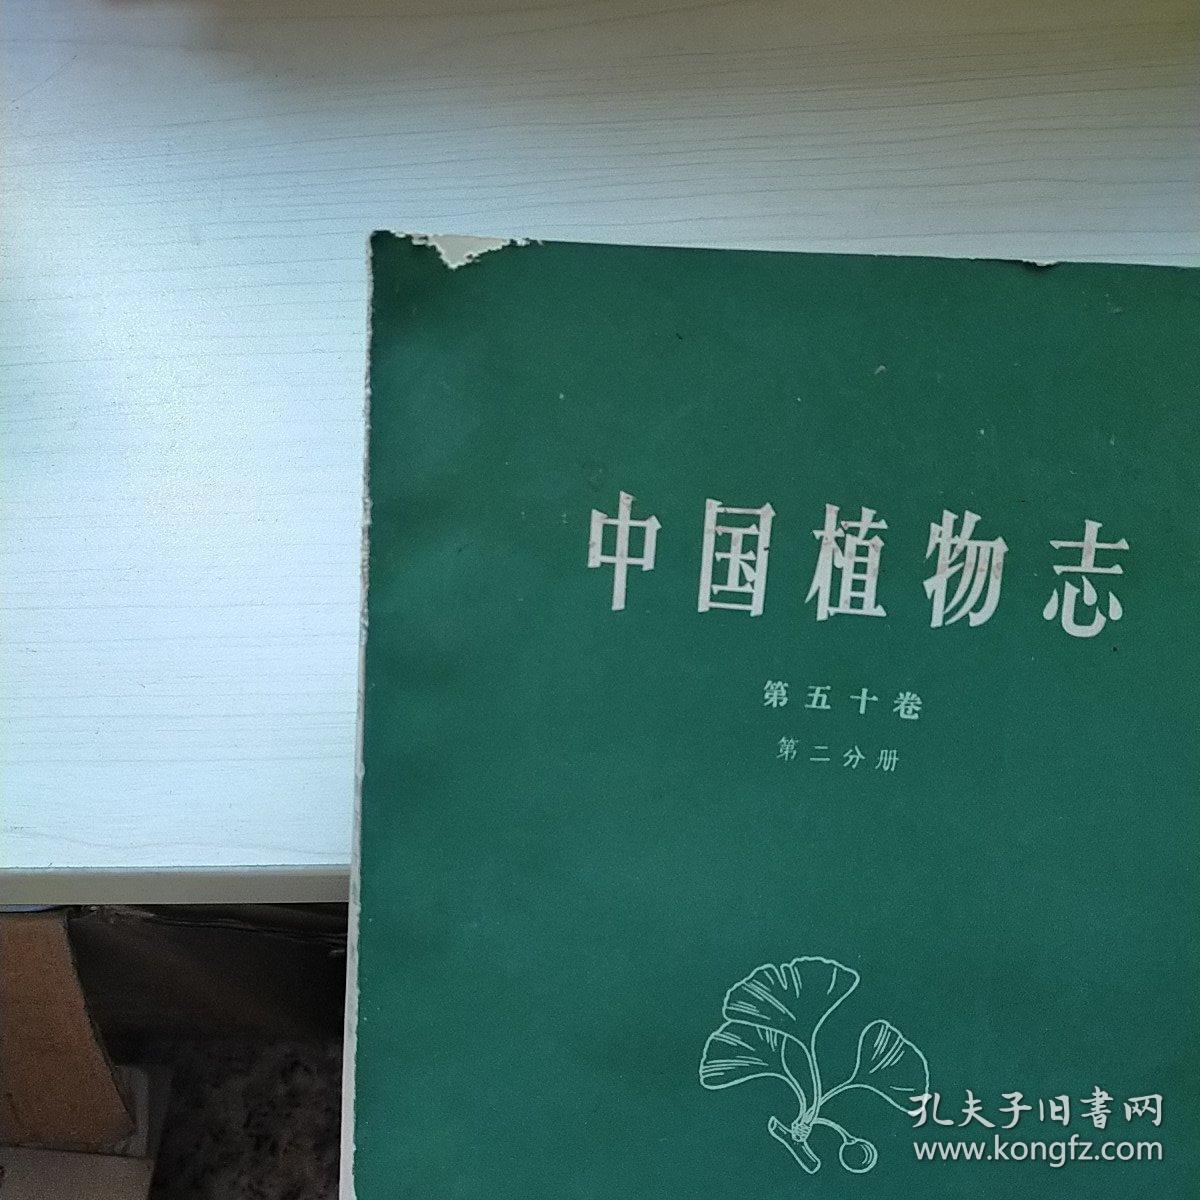 中国植物志（第五十卷）（第二分册）（插图本）正版  内页干净  现货  一版一印